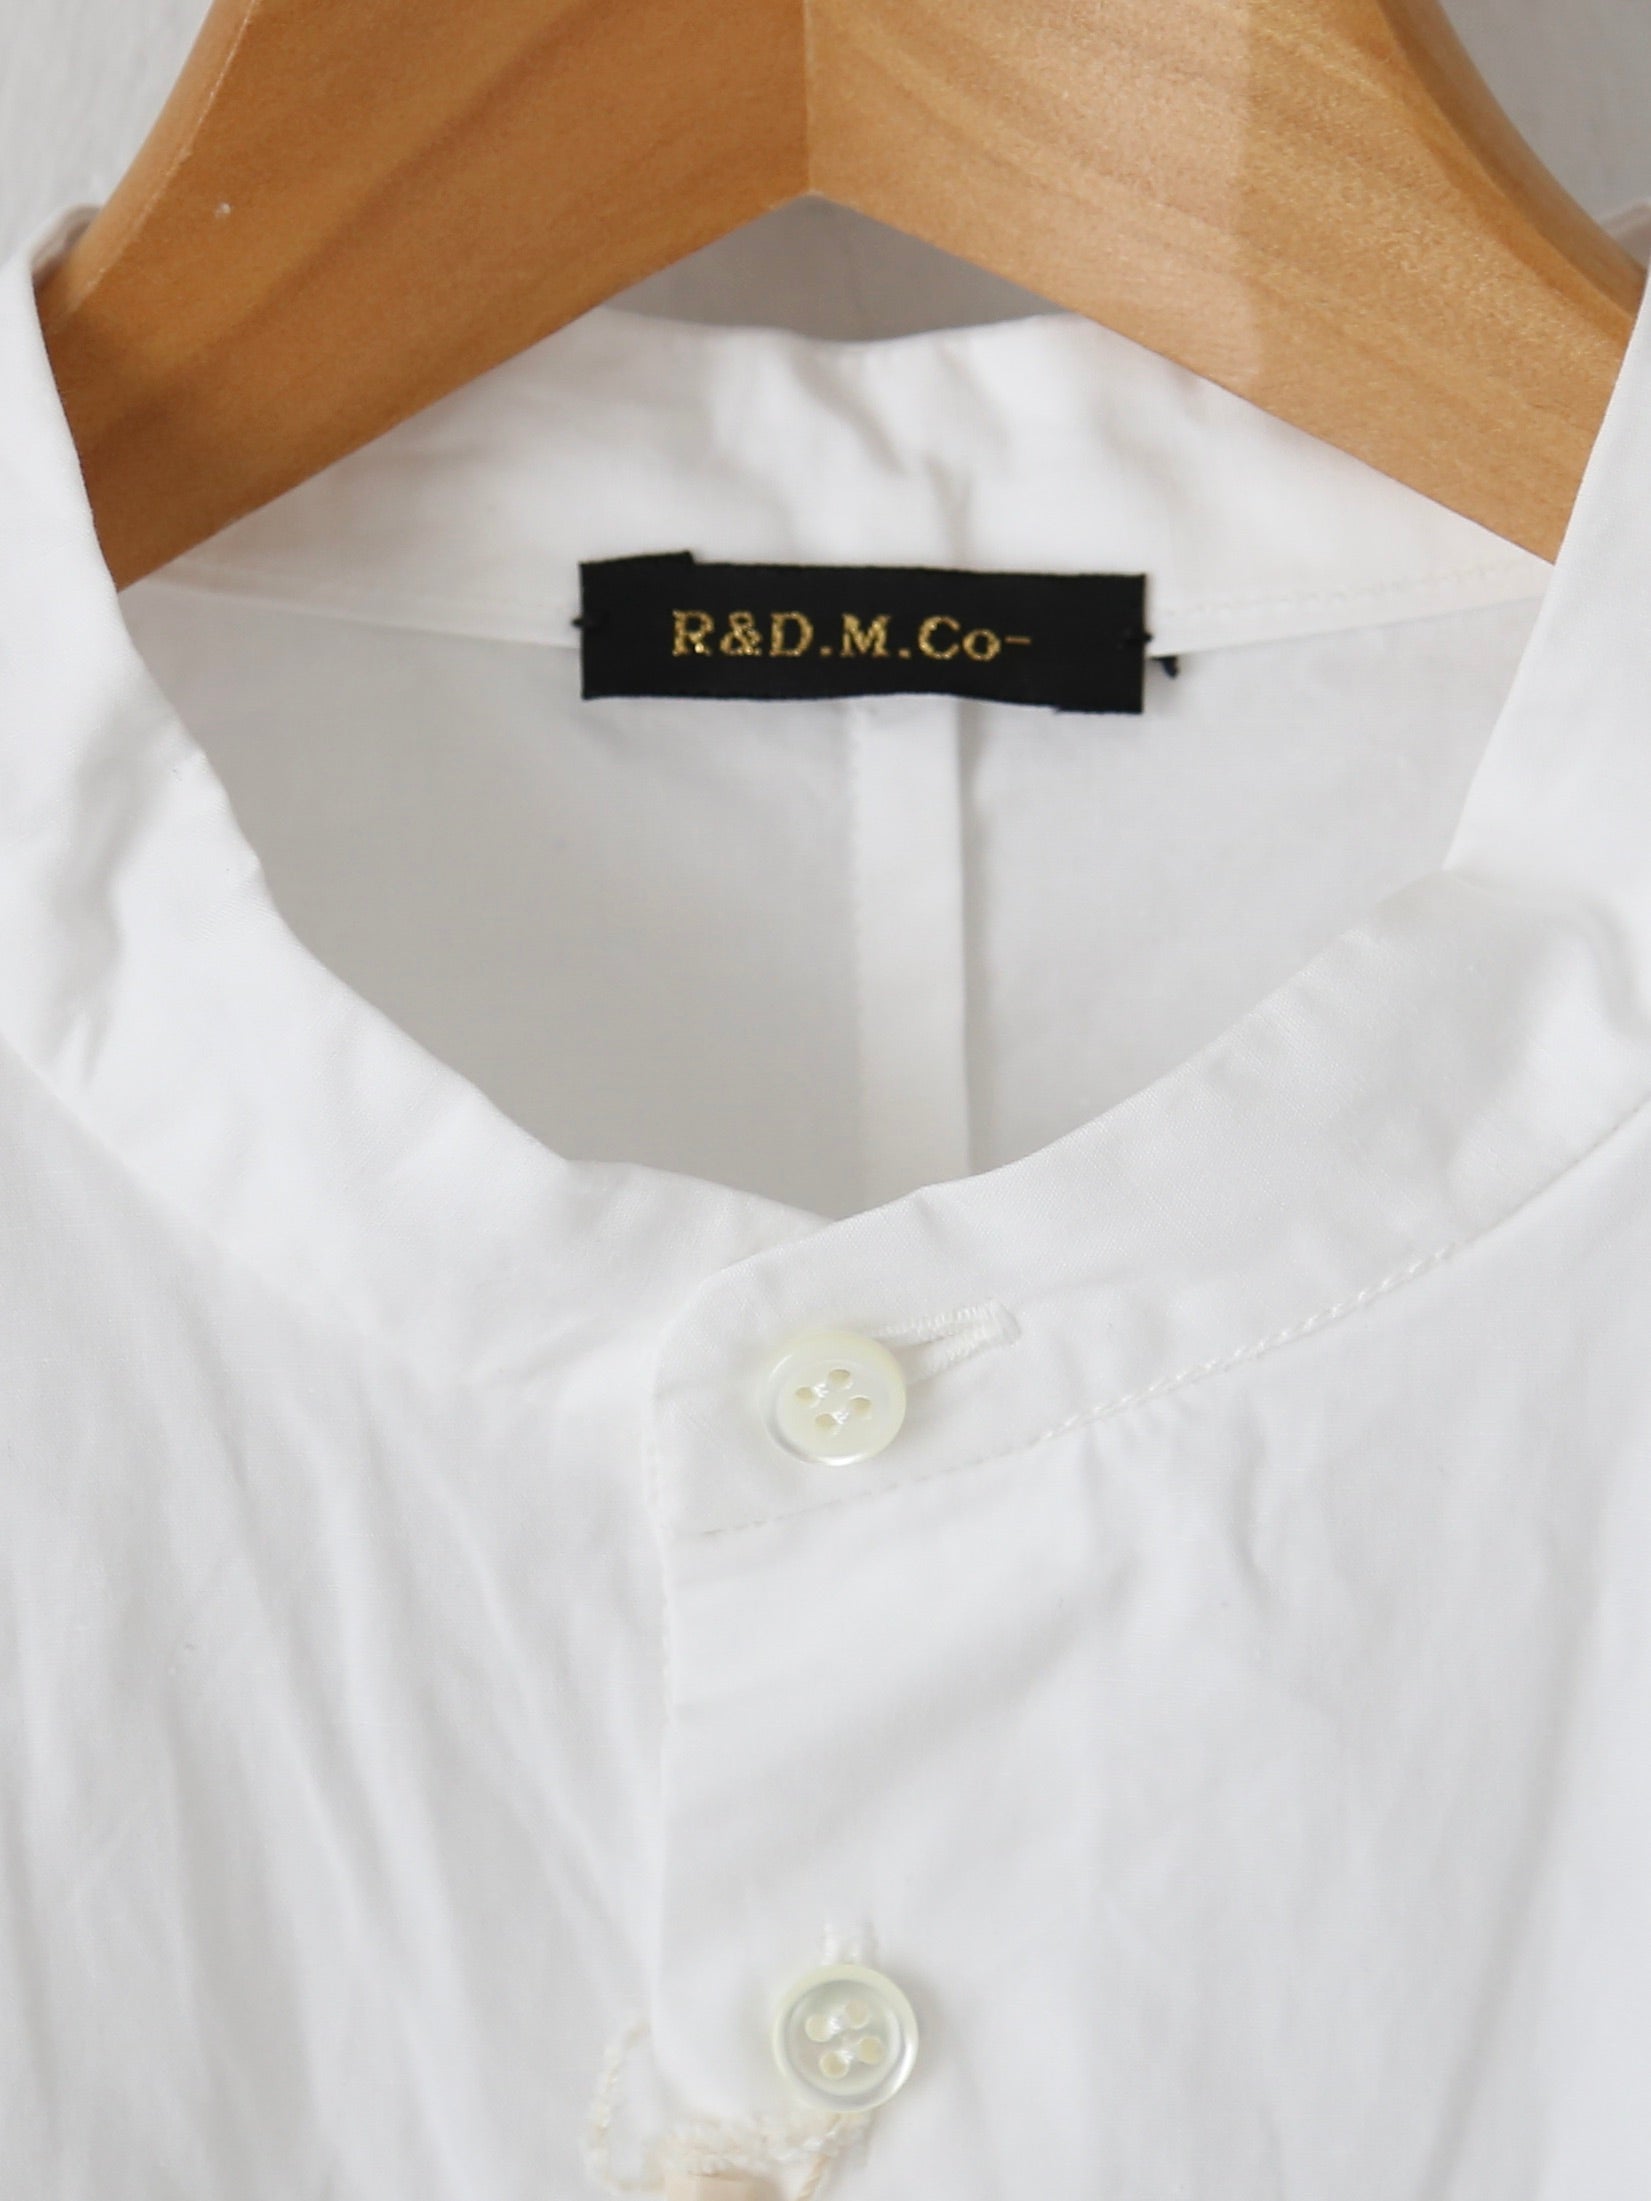 R&D.M.Co- ガーメントダイバギーシャツ [6201]